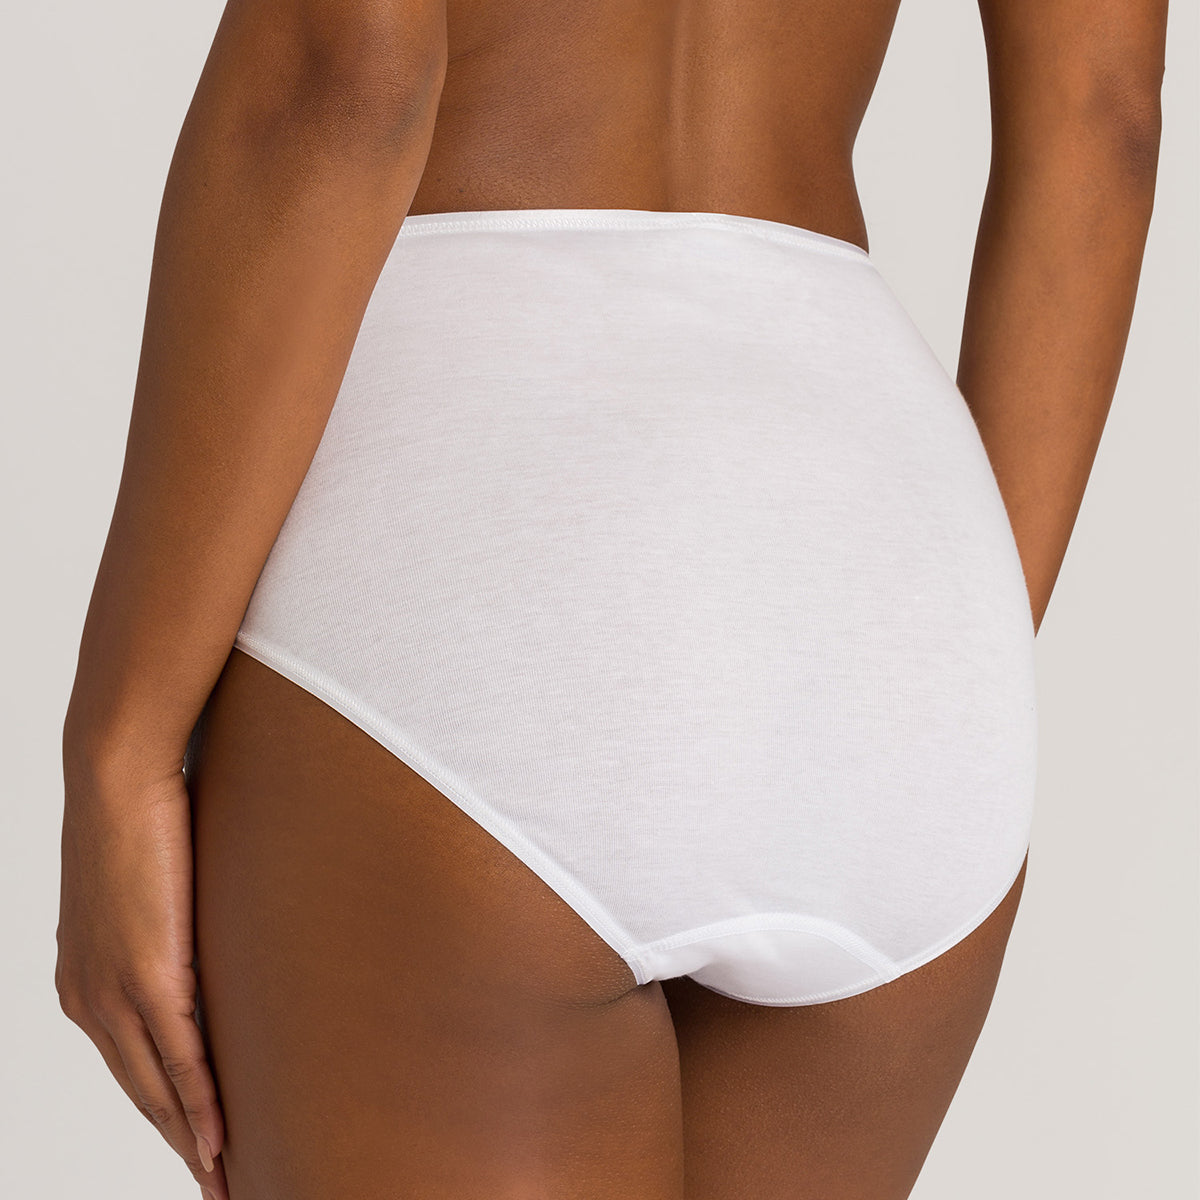 12 x Ladies Women 100% Cotton Full Size Briefs Knickers Underwear